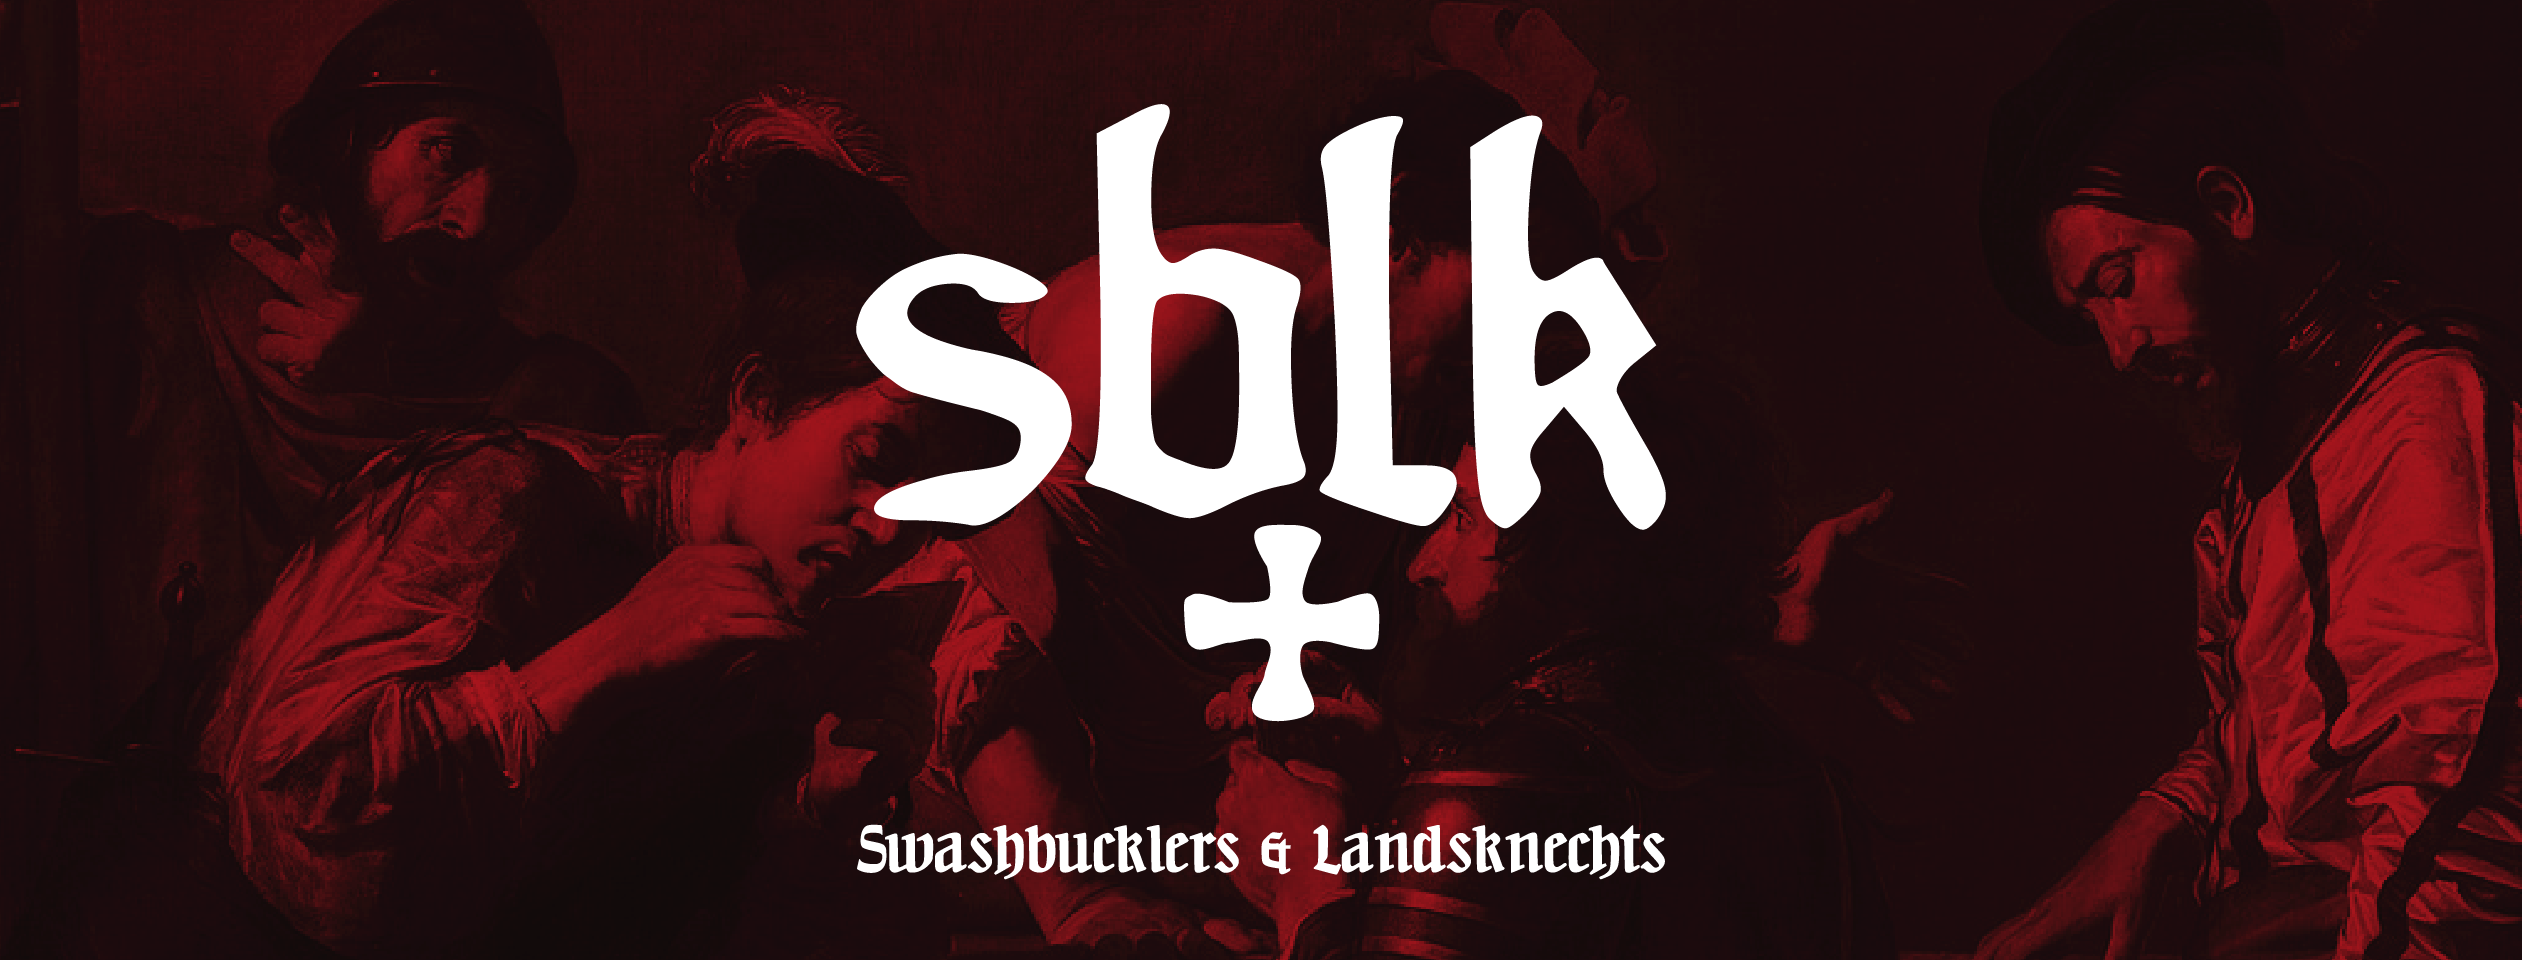 Swashbucklers & Landsknechts [Preview]